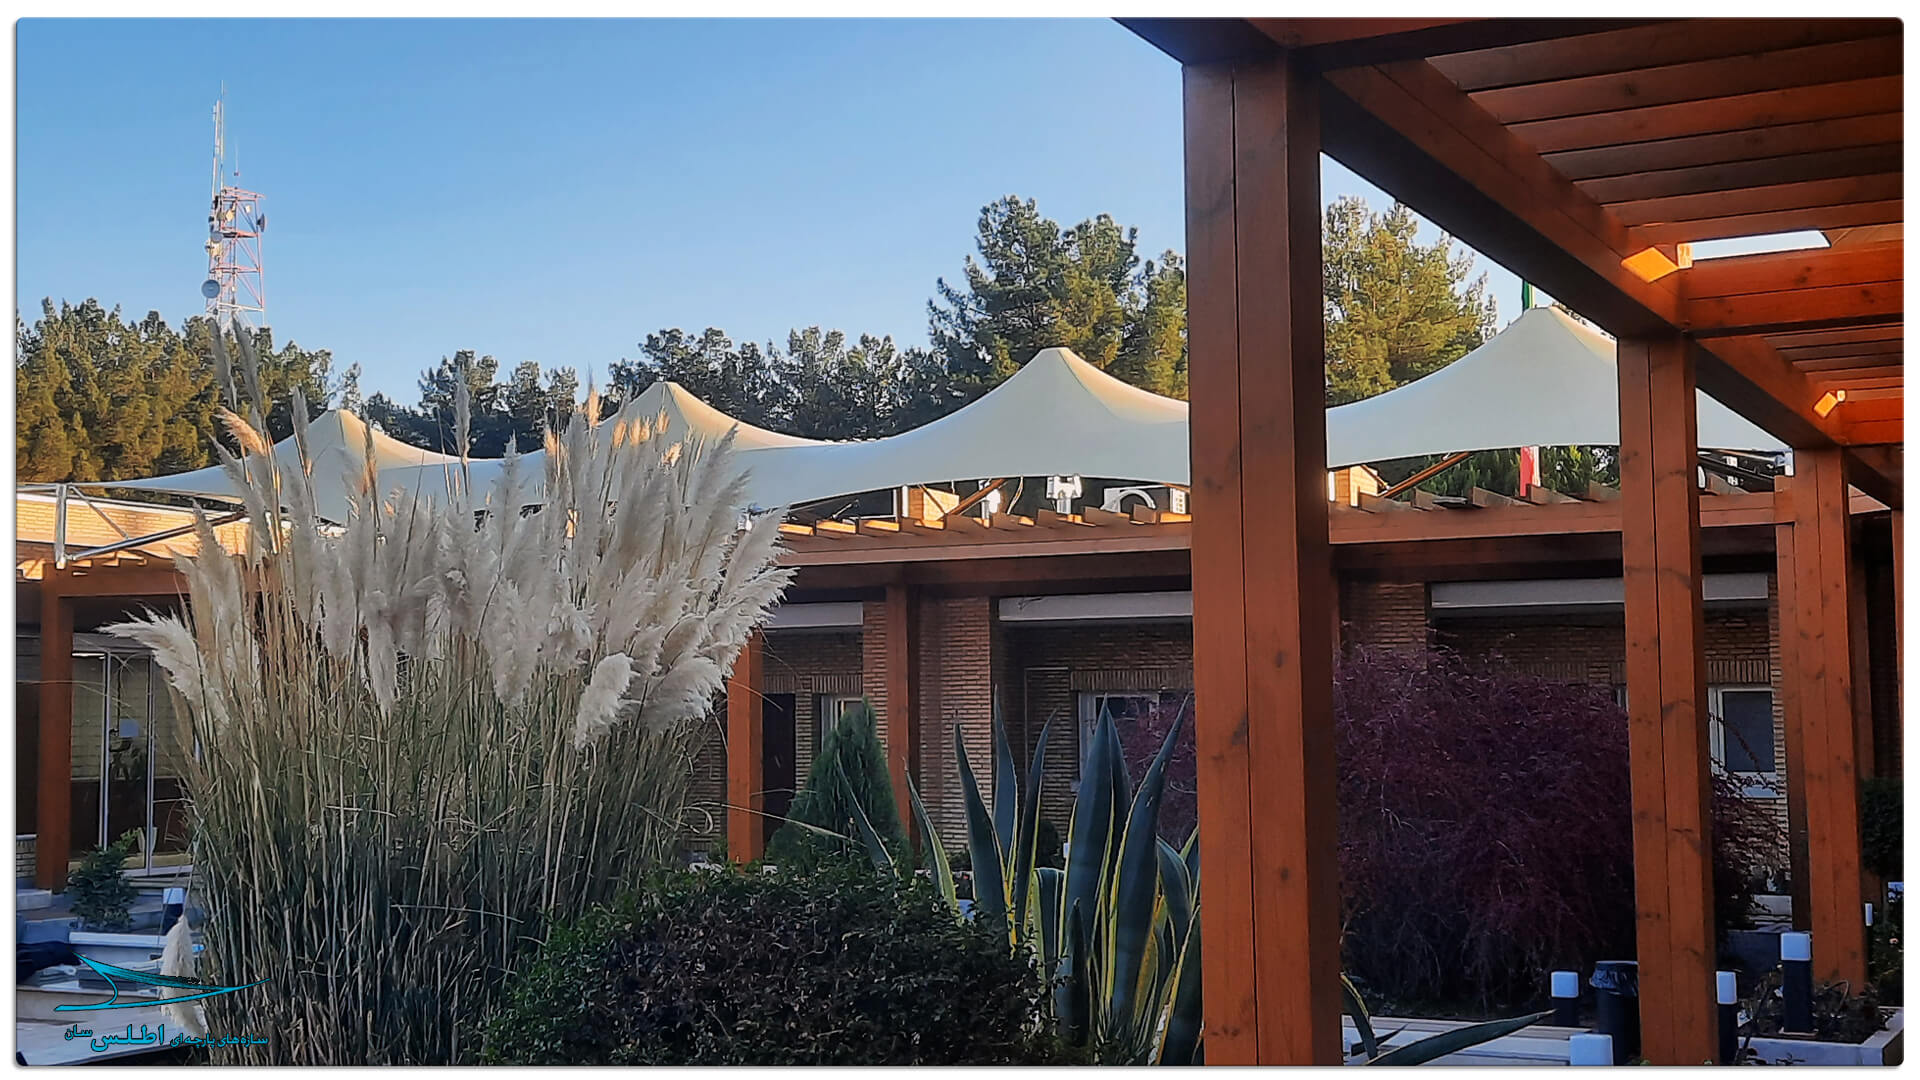 سازه پارچه ای مهمانسرای گل گهر سیرجان | سازه پارچه ای اطلس سان